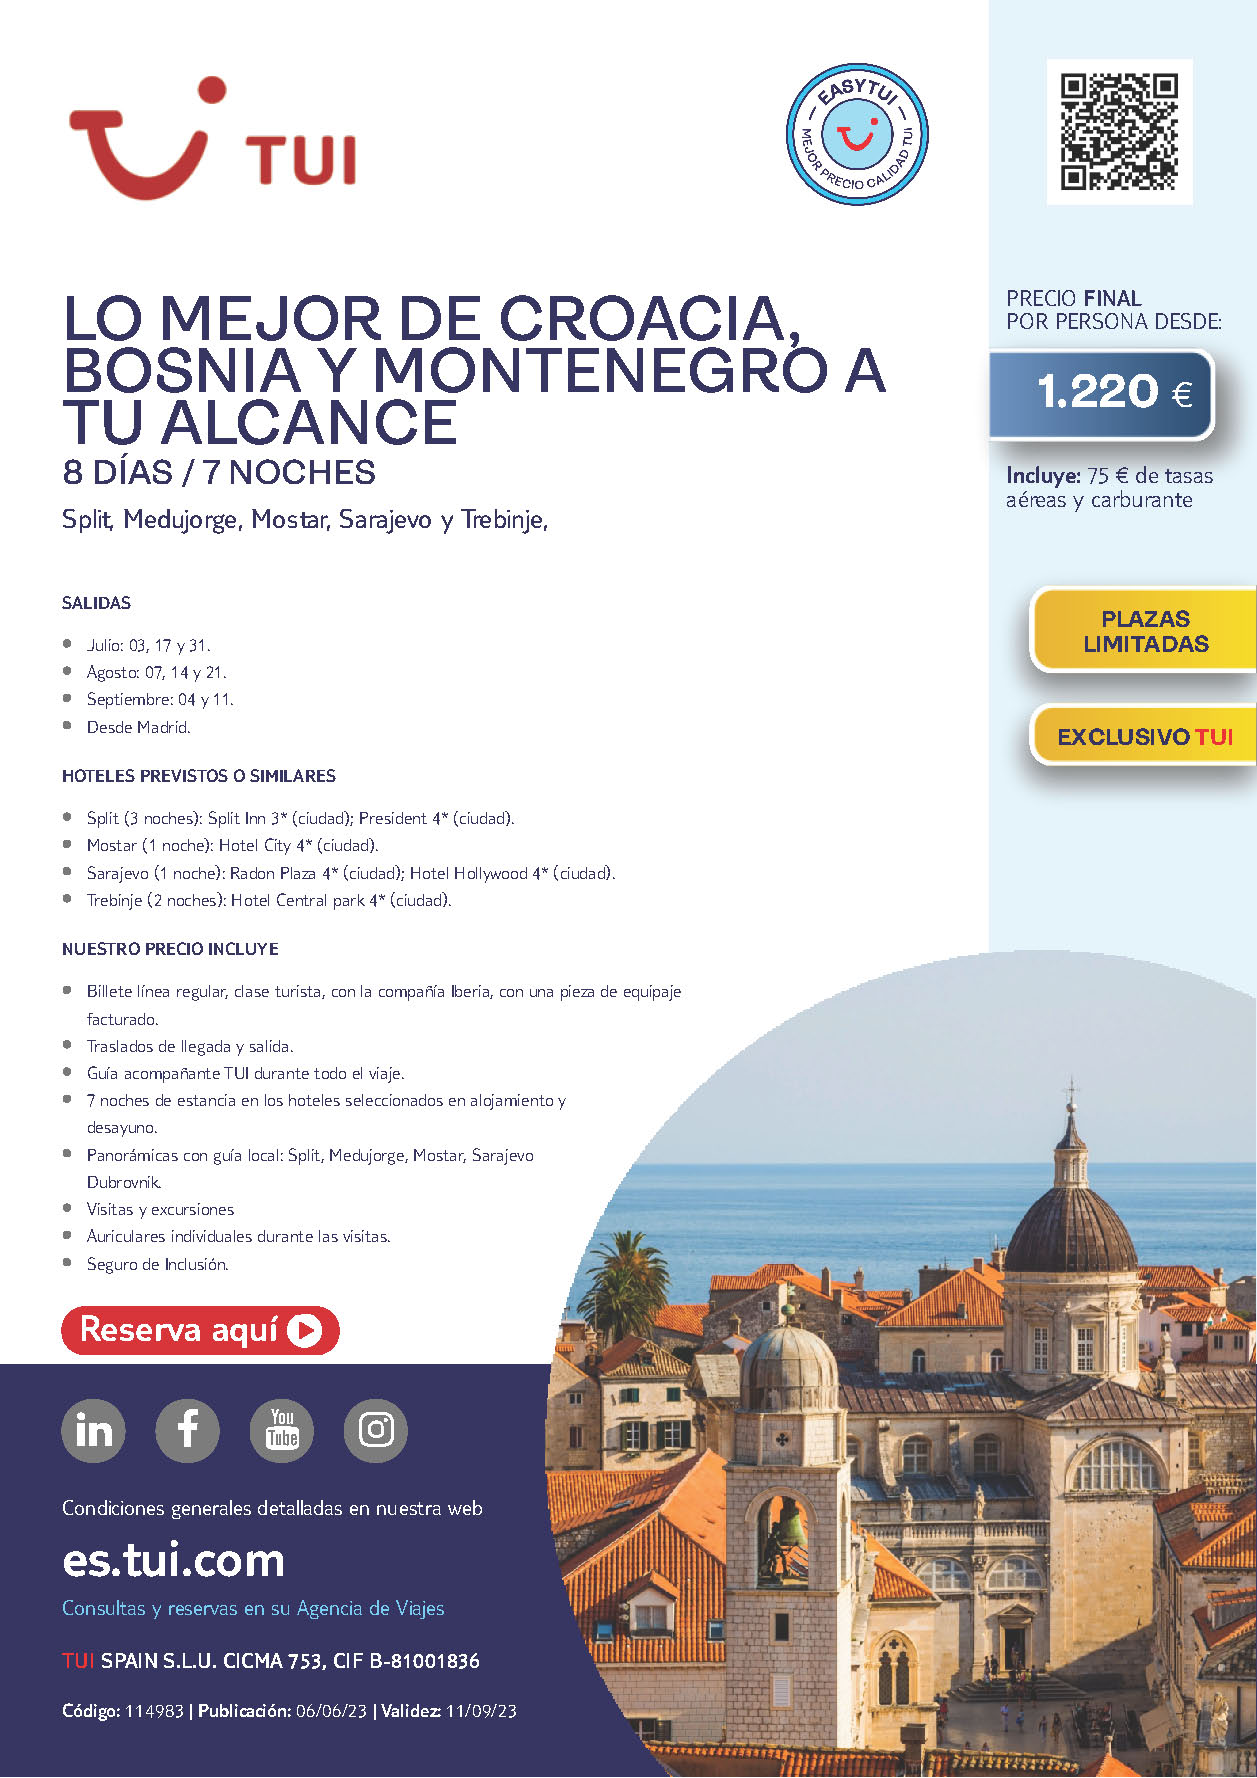 Oferta TUI Lo Mejor de Croacia Bosnia y Montenegro 8 dias Julio Agosto y Septiembre 2023 salidas desde Madrid vuelos Iberia